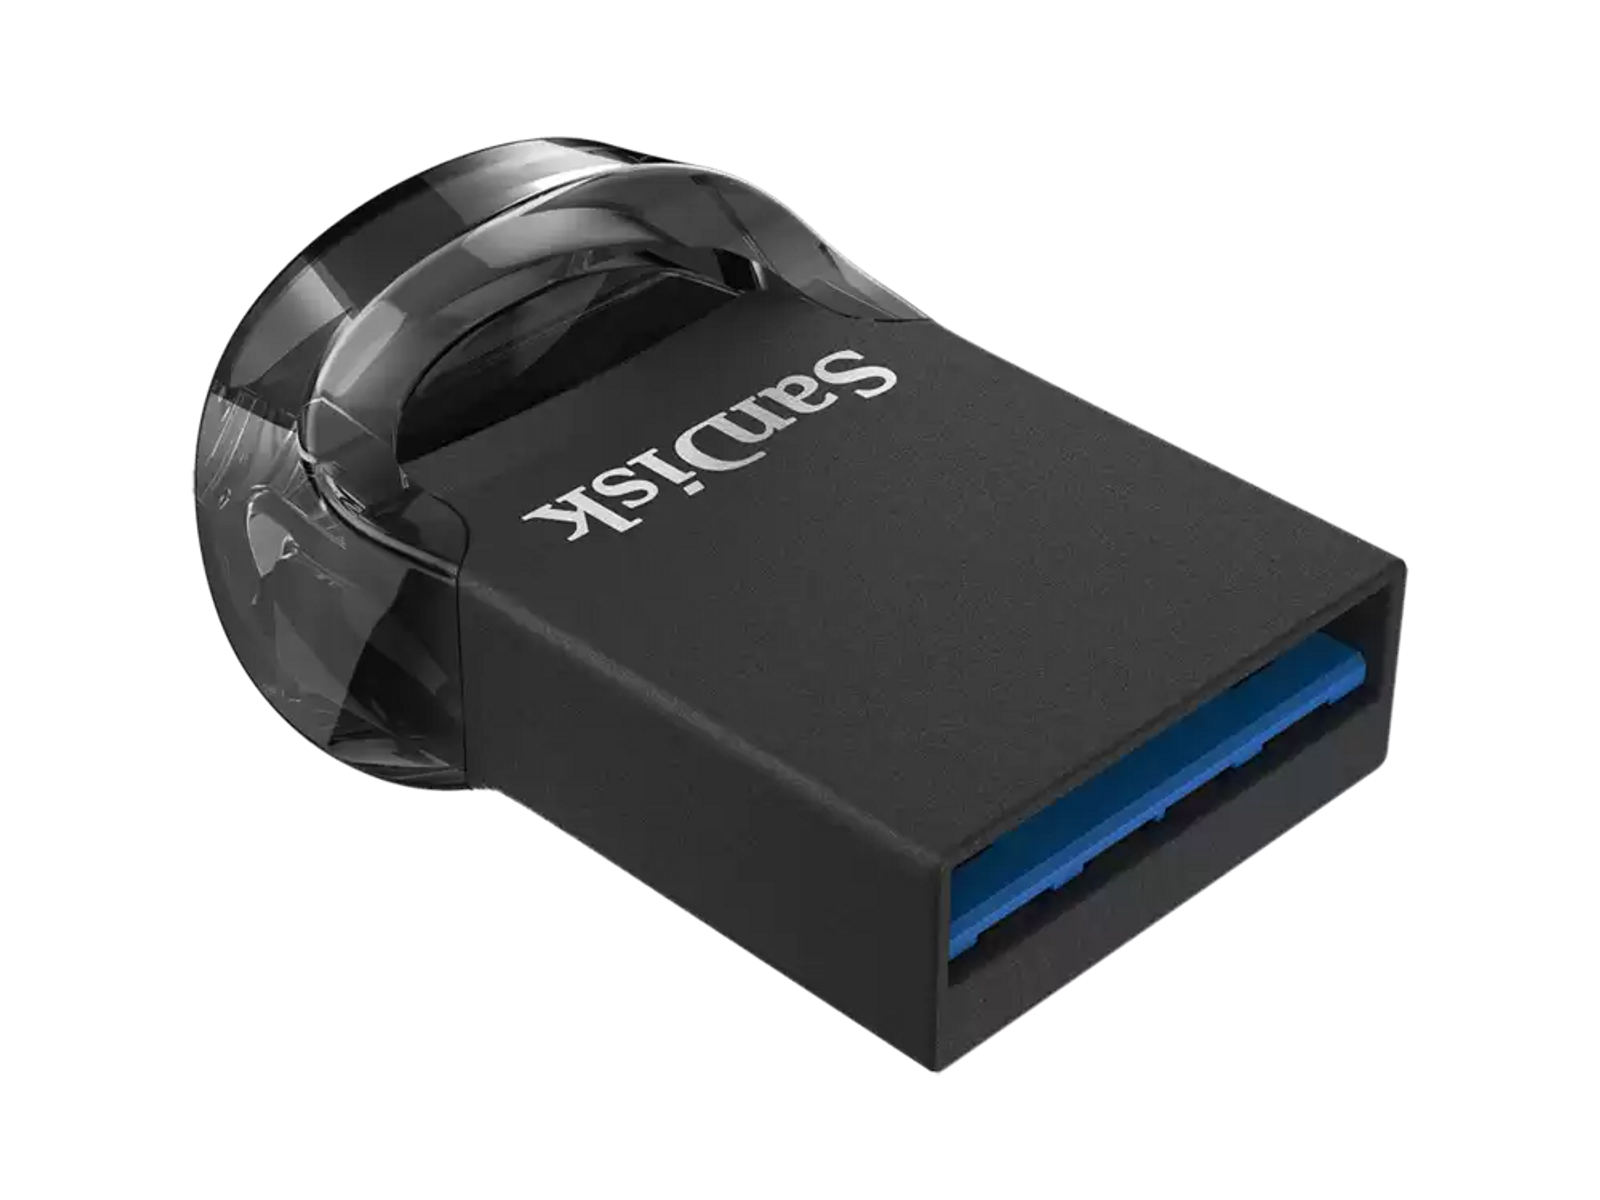 SANDISK SDCZ430-512G-G46 ULTRA FIT (Schwarz, 512GB 512 GB) USB-Stick